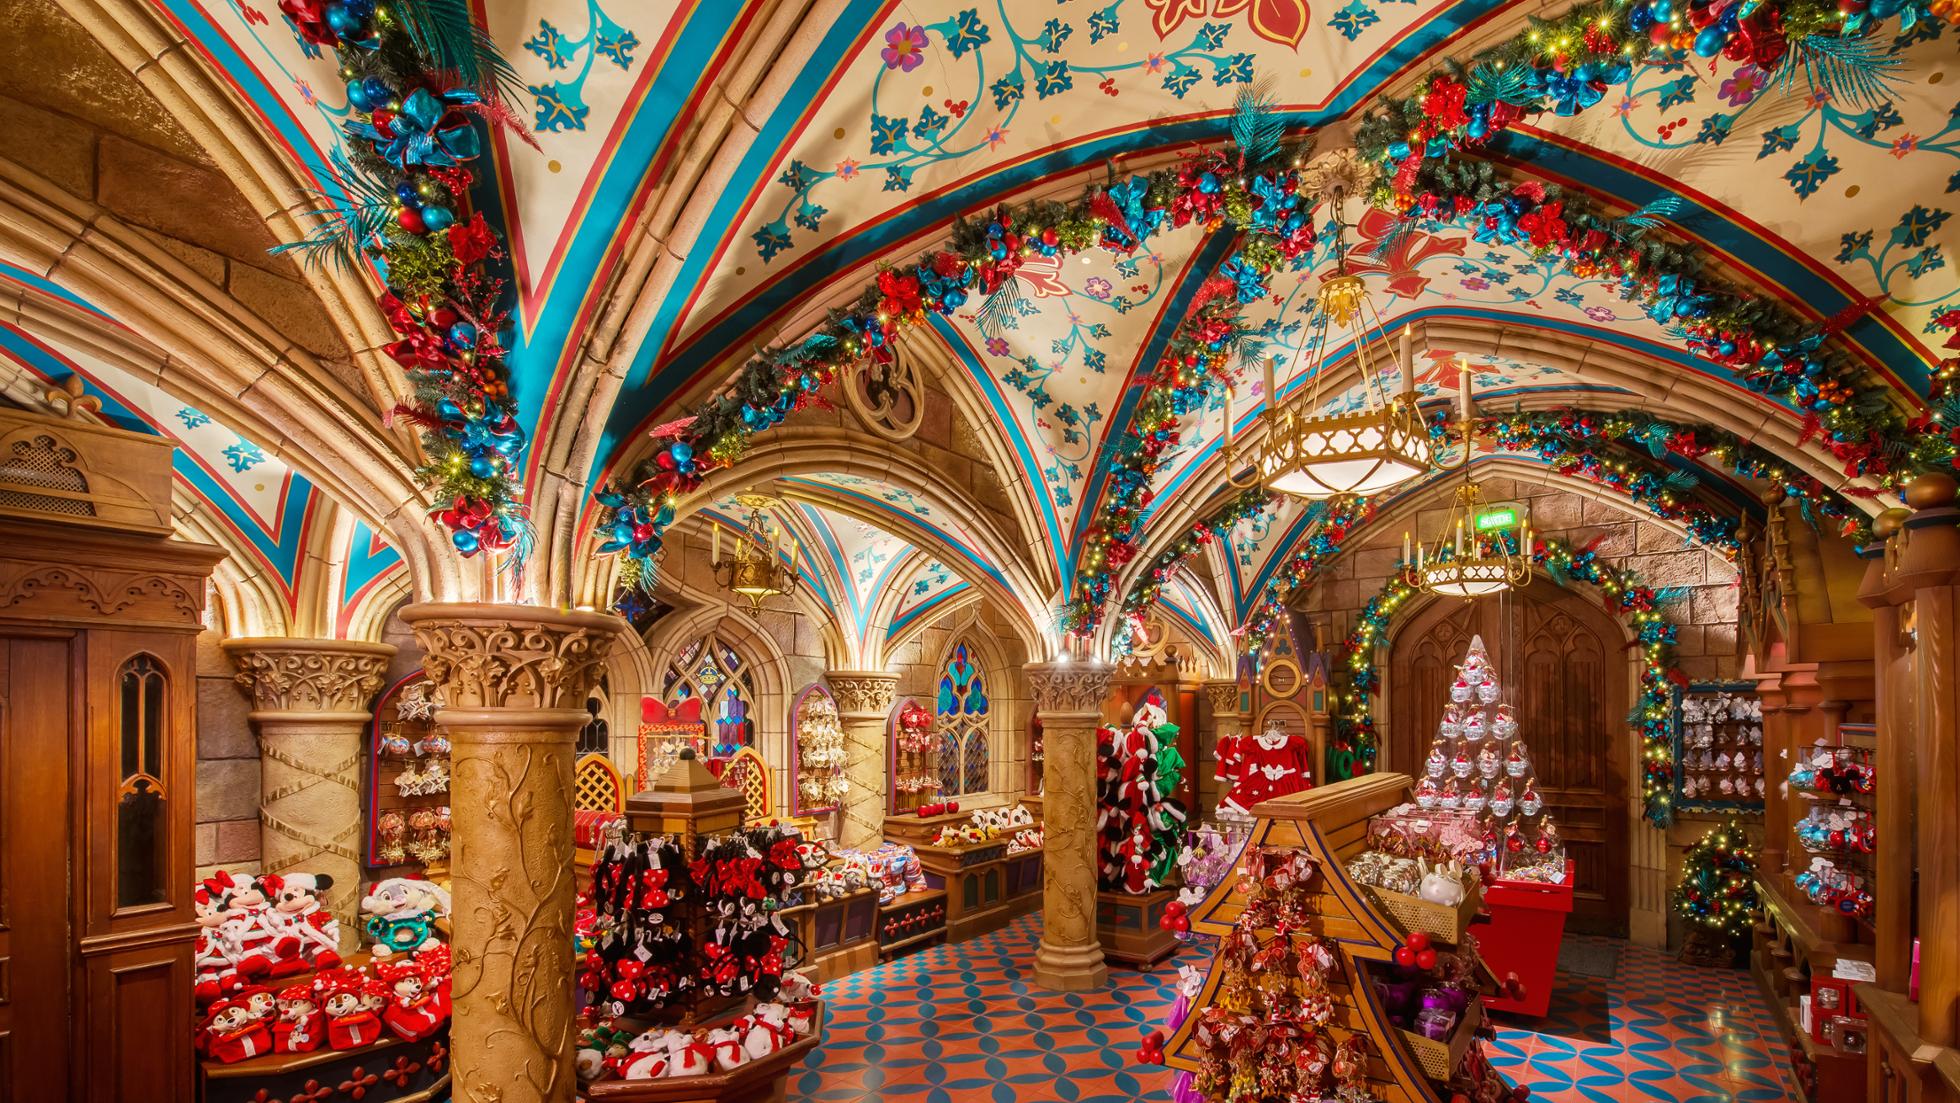 Boutique du Chateau internamente decorata per Natale con gadget e addobbi